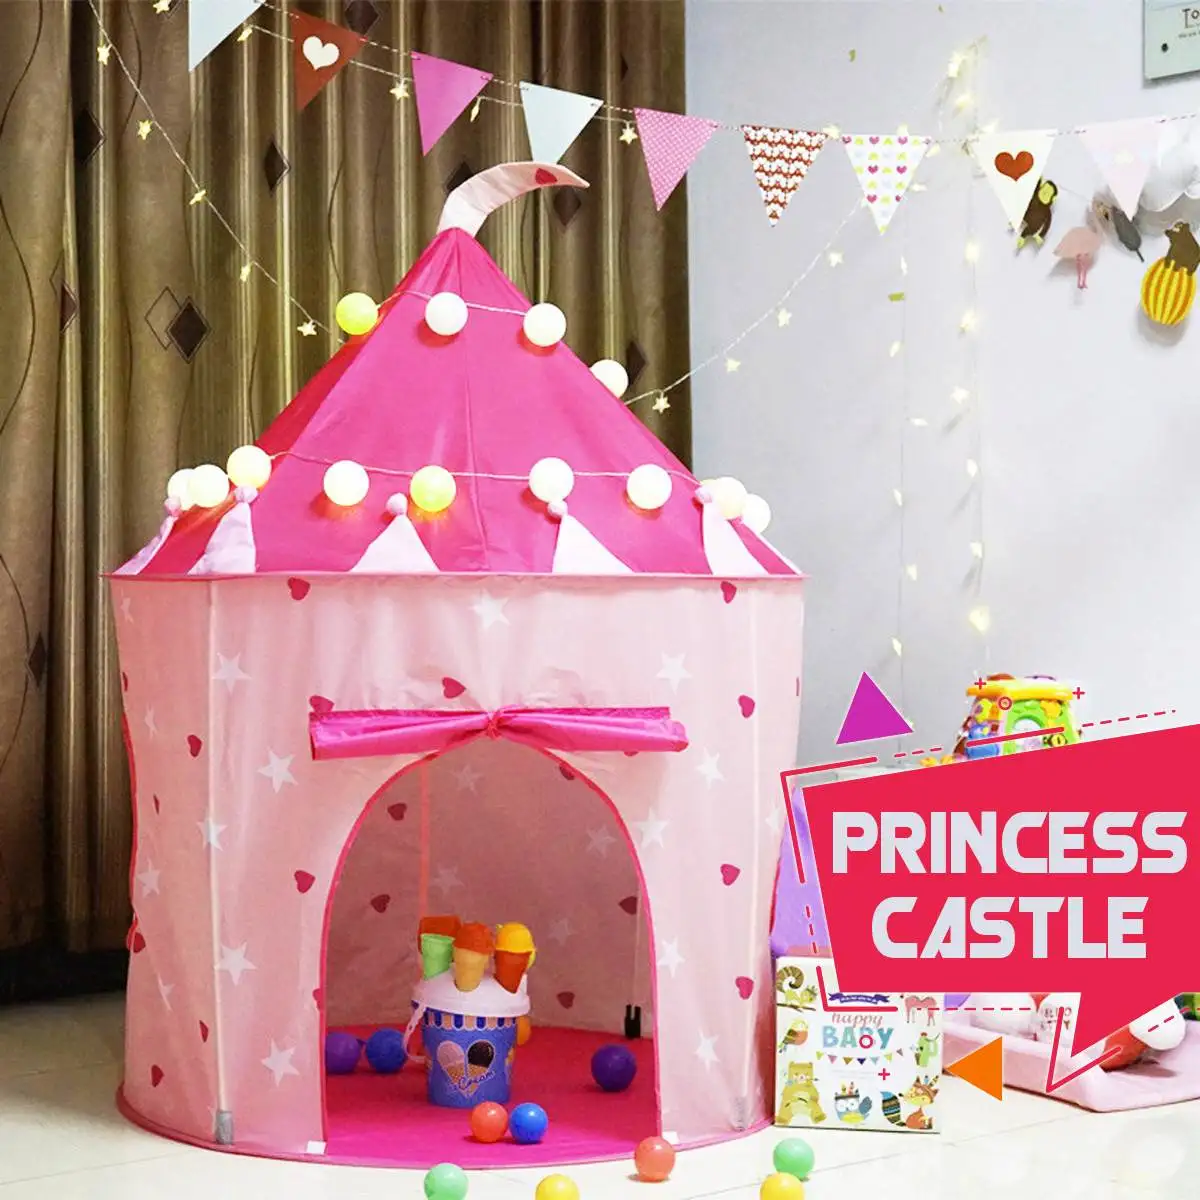 Портативная палатка принцессы принца замка 105x135 см, детская палатка, подарок на день рождения, рождественский подарок